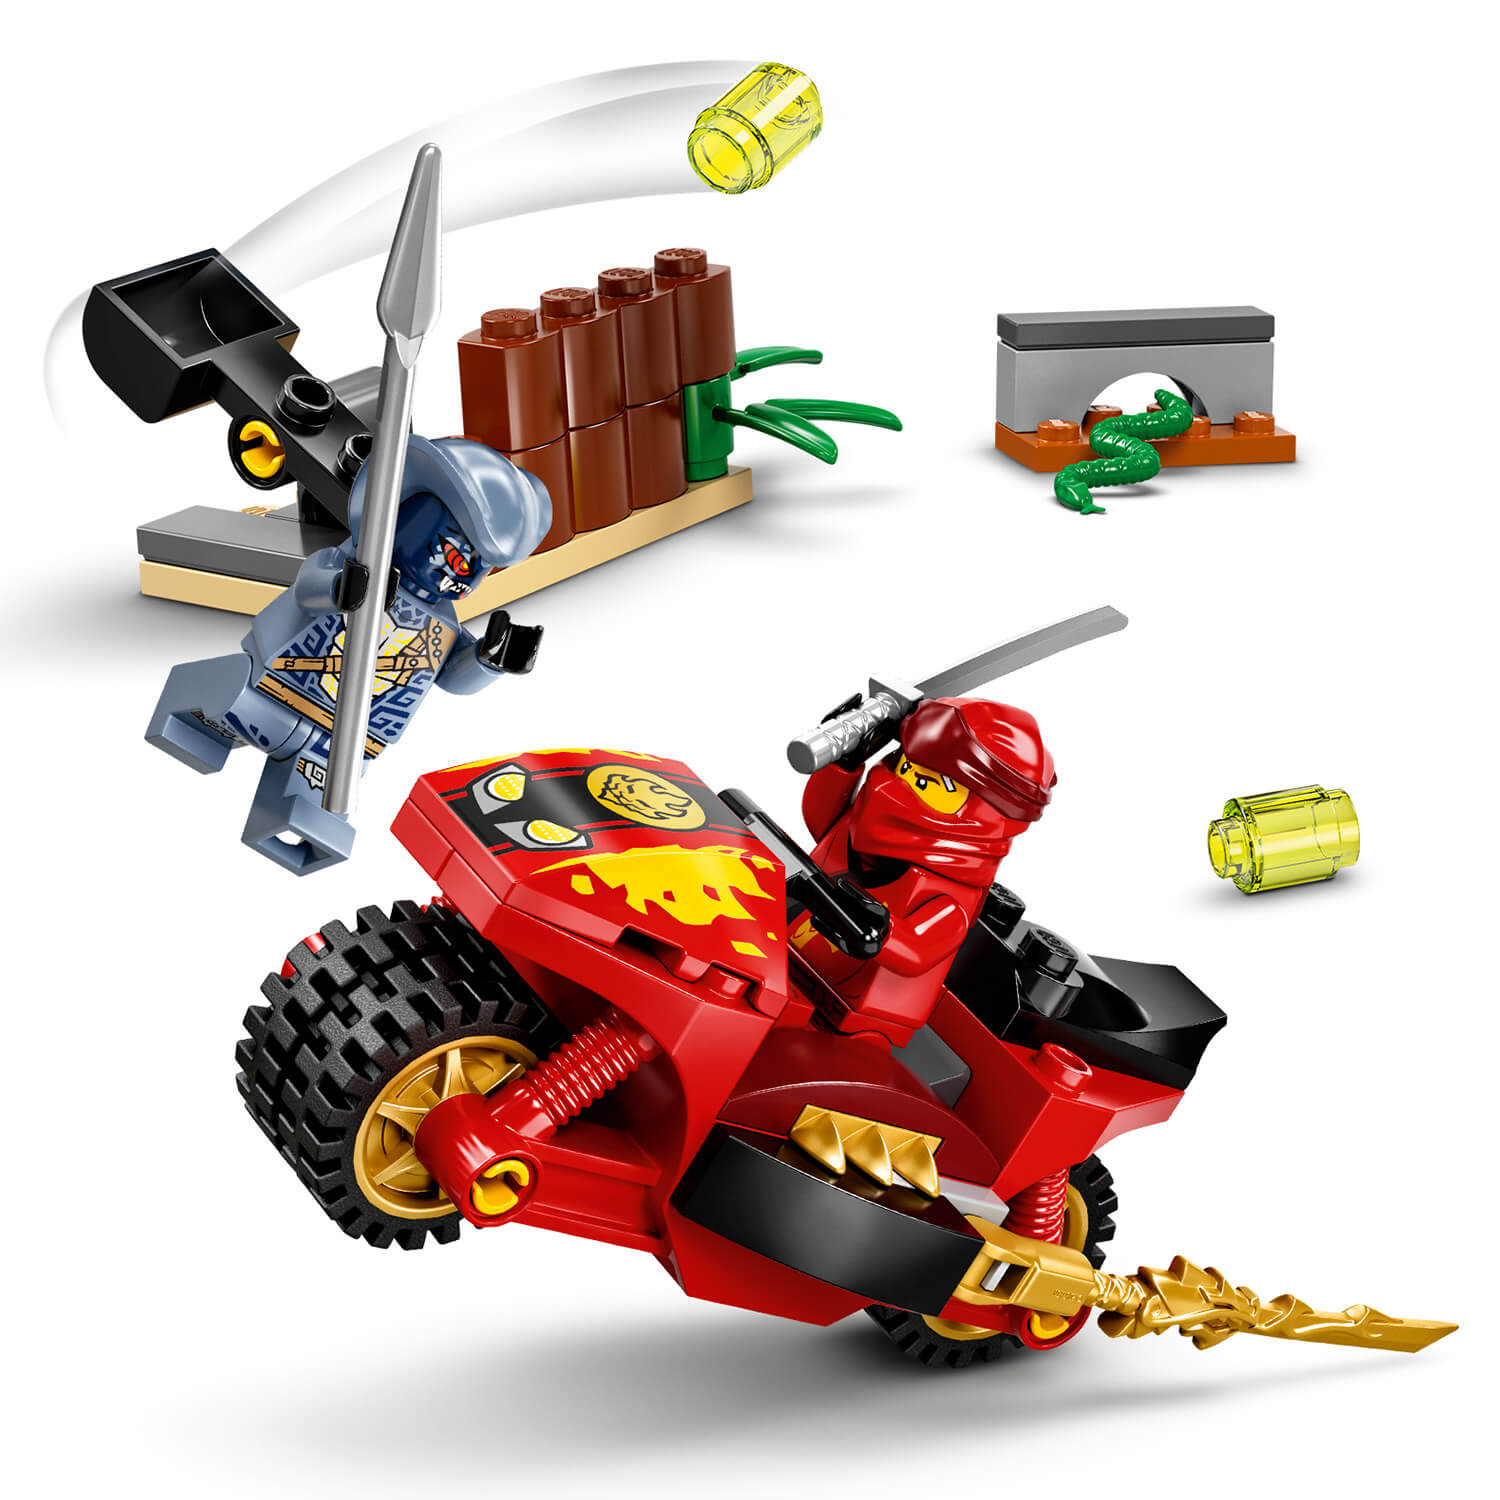 Učte se stavět s LEGO® kostkami